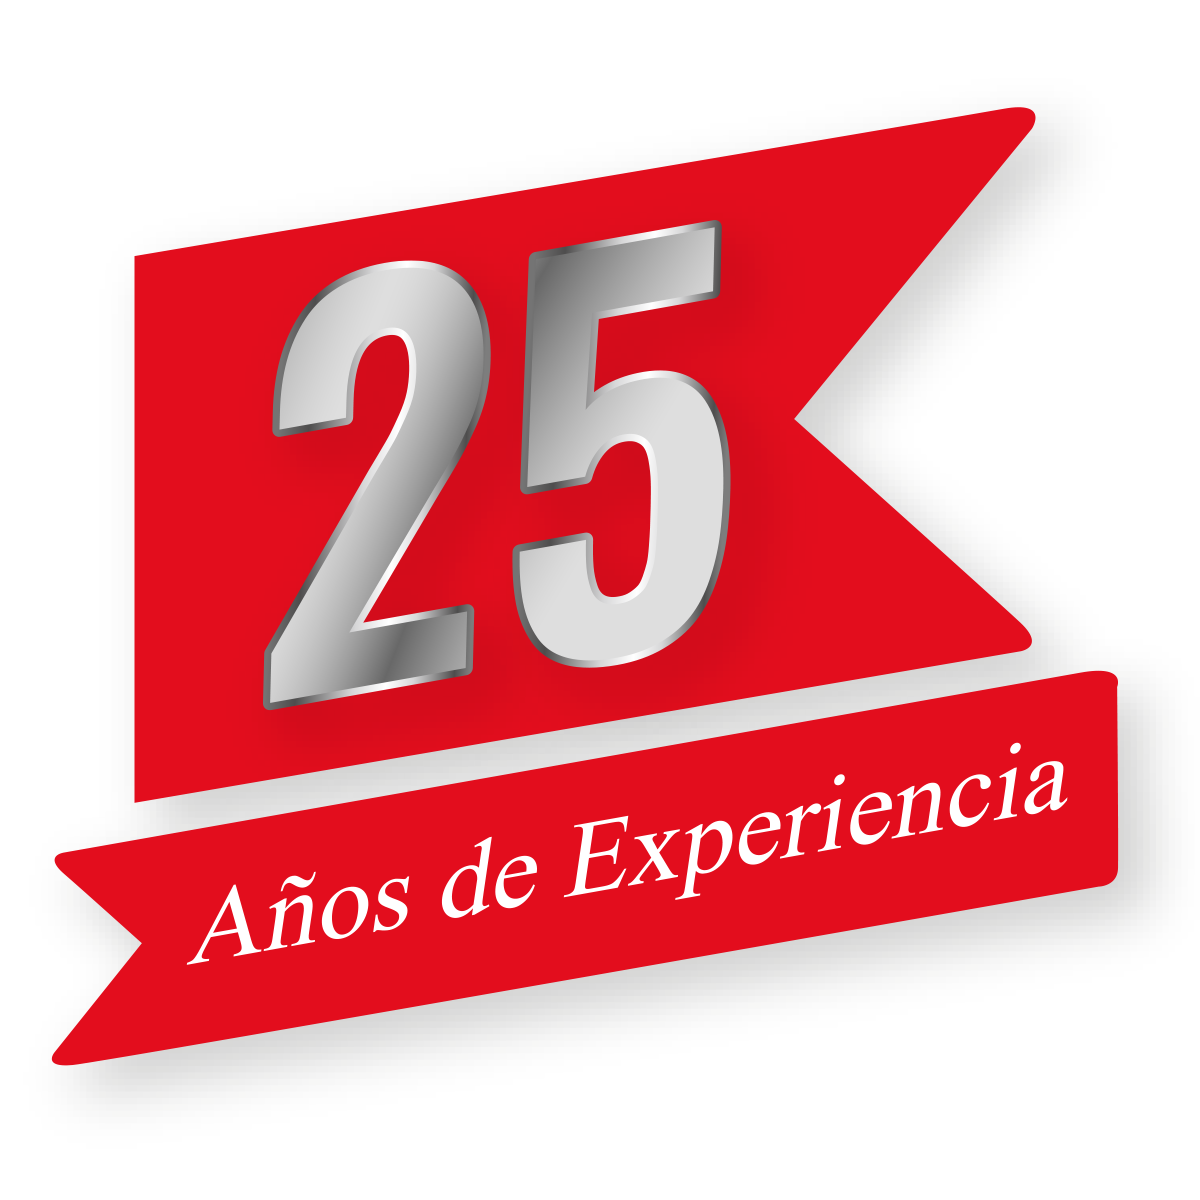 25 años de experiencia